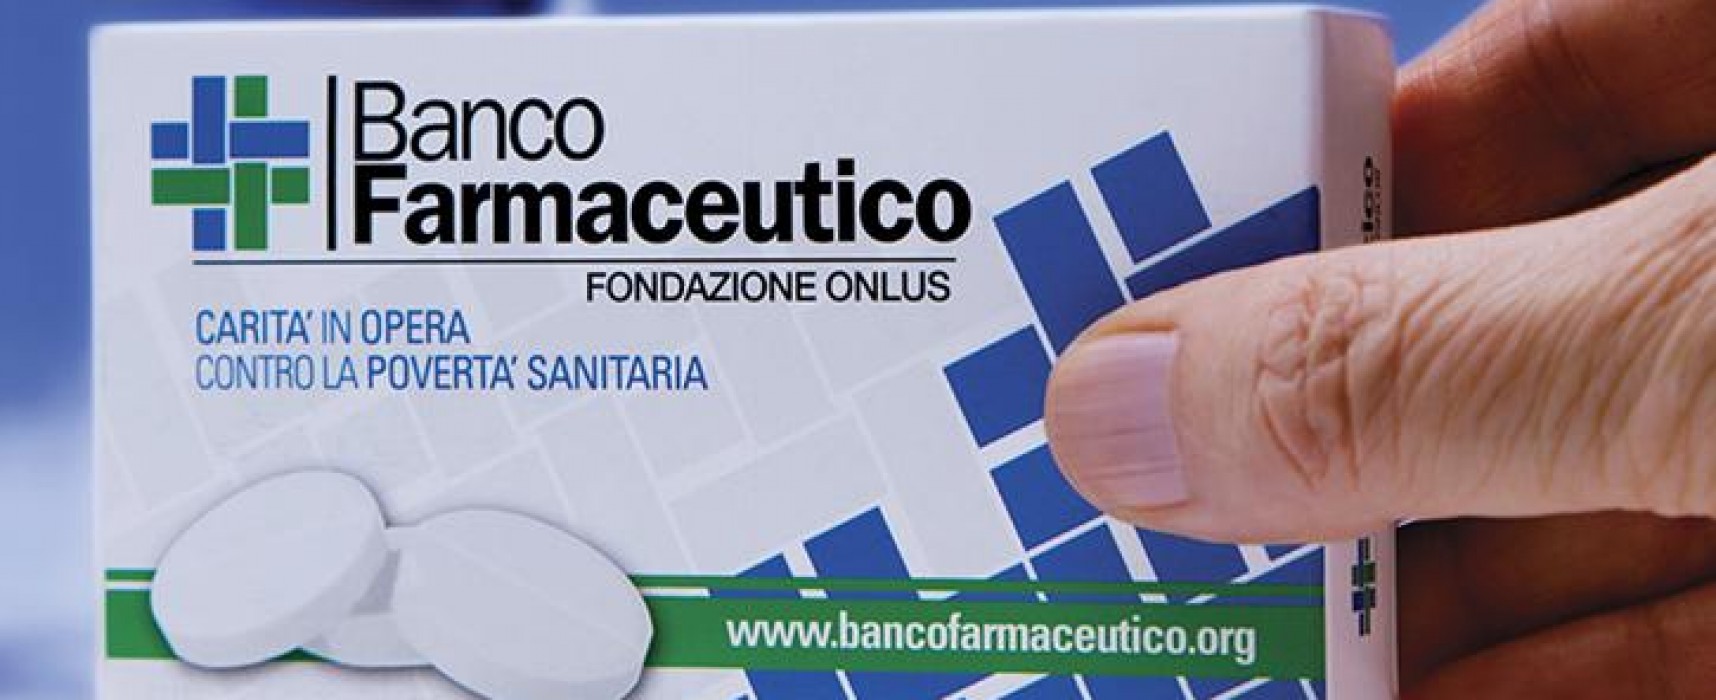 Banco Farmaceutico 2016, quattro farmacie biscegliesi coinvolte nell’iniziativa / VIDEO